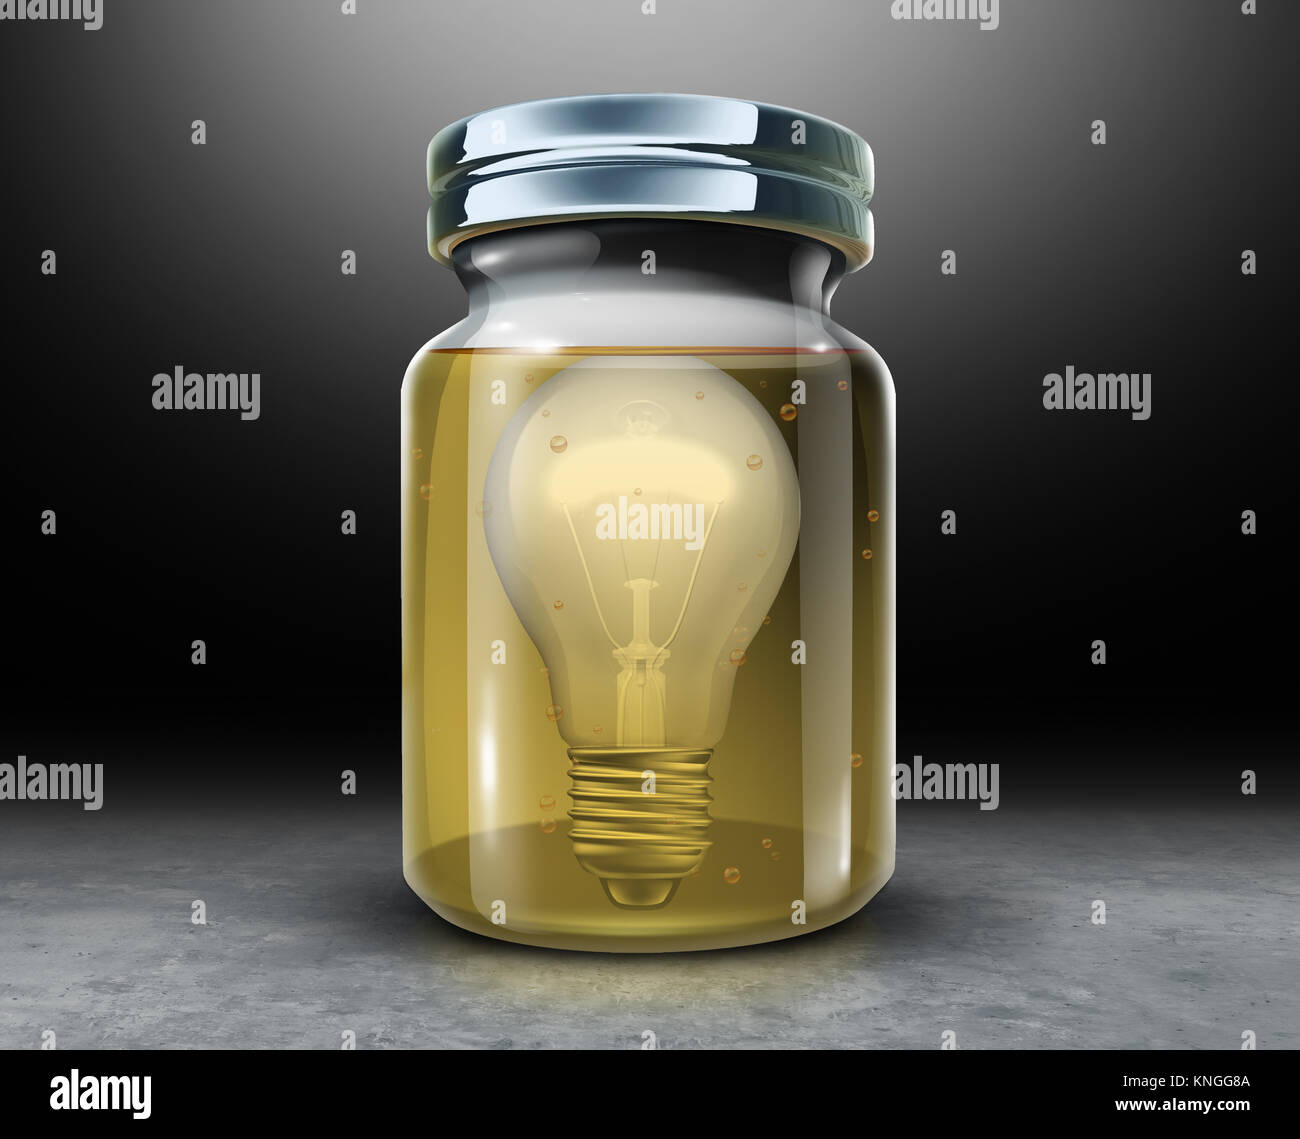 Kreativität Konzept zu bewahren und die Wahrung geistigen Eigentums Symbol wie eine Glühbirne in ein Glas mit Konservierungsmittel Formaldehyd. Stockfoto